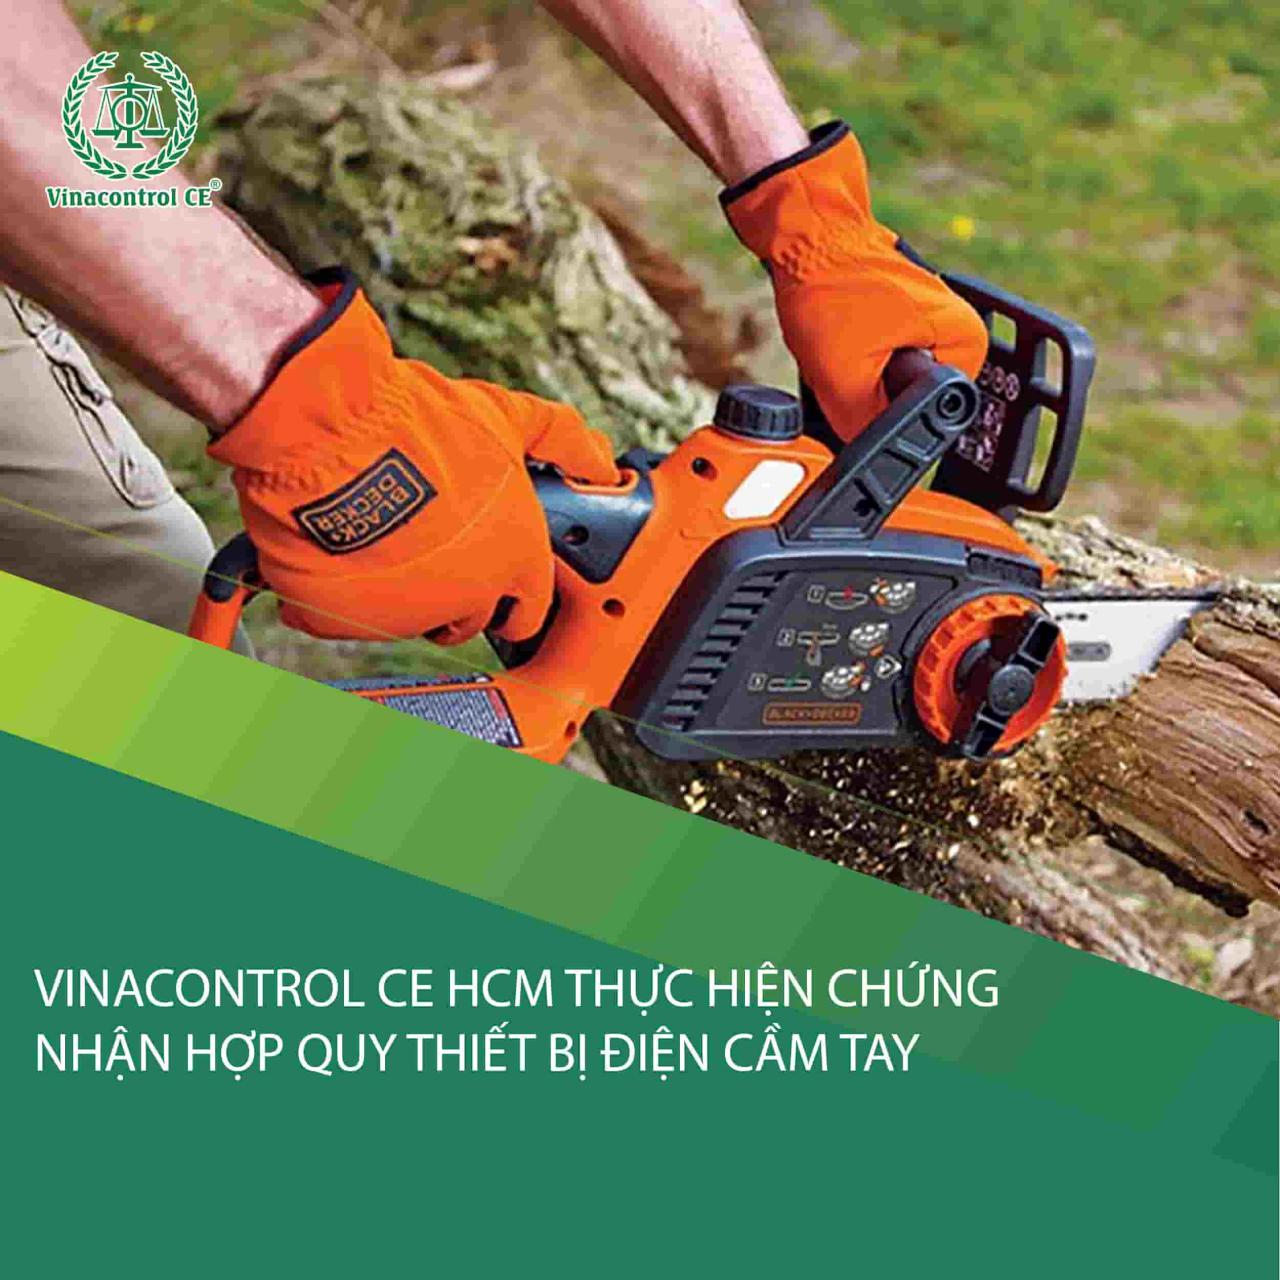 Vinacontrol CE HCM chứng nhận hợp quy dụng cụ điện cầm tay